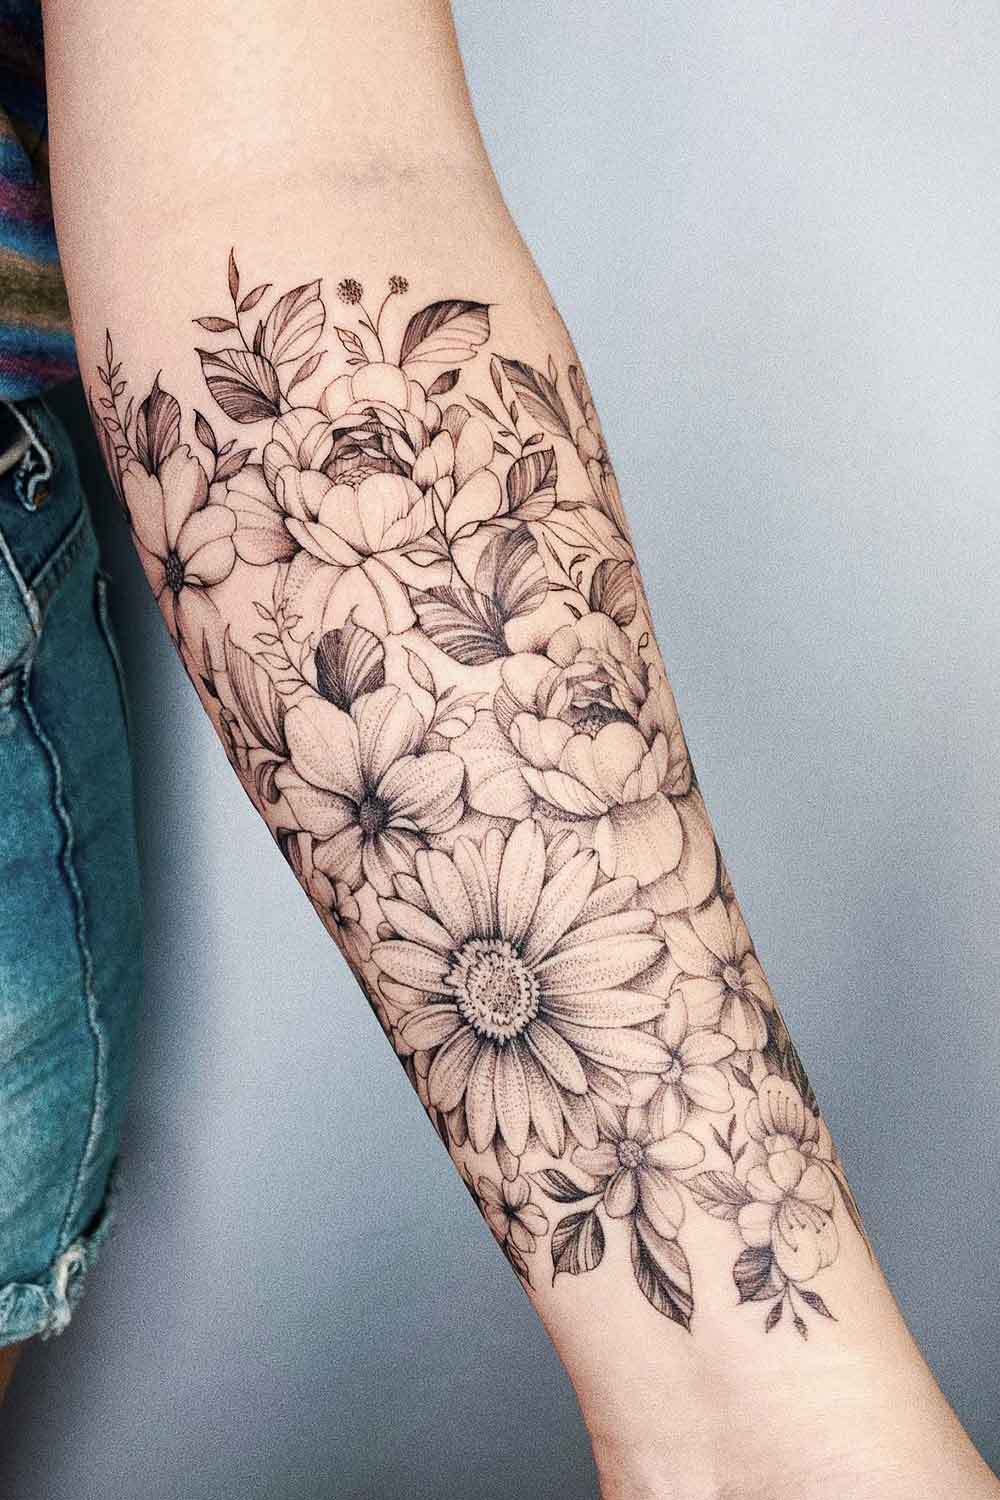 tatuagem-floral-no-antebraco 